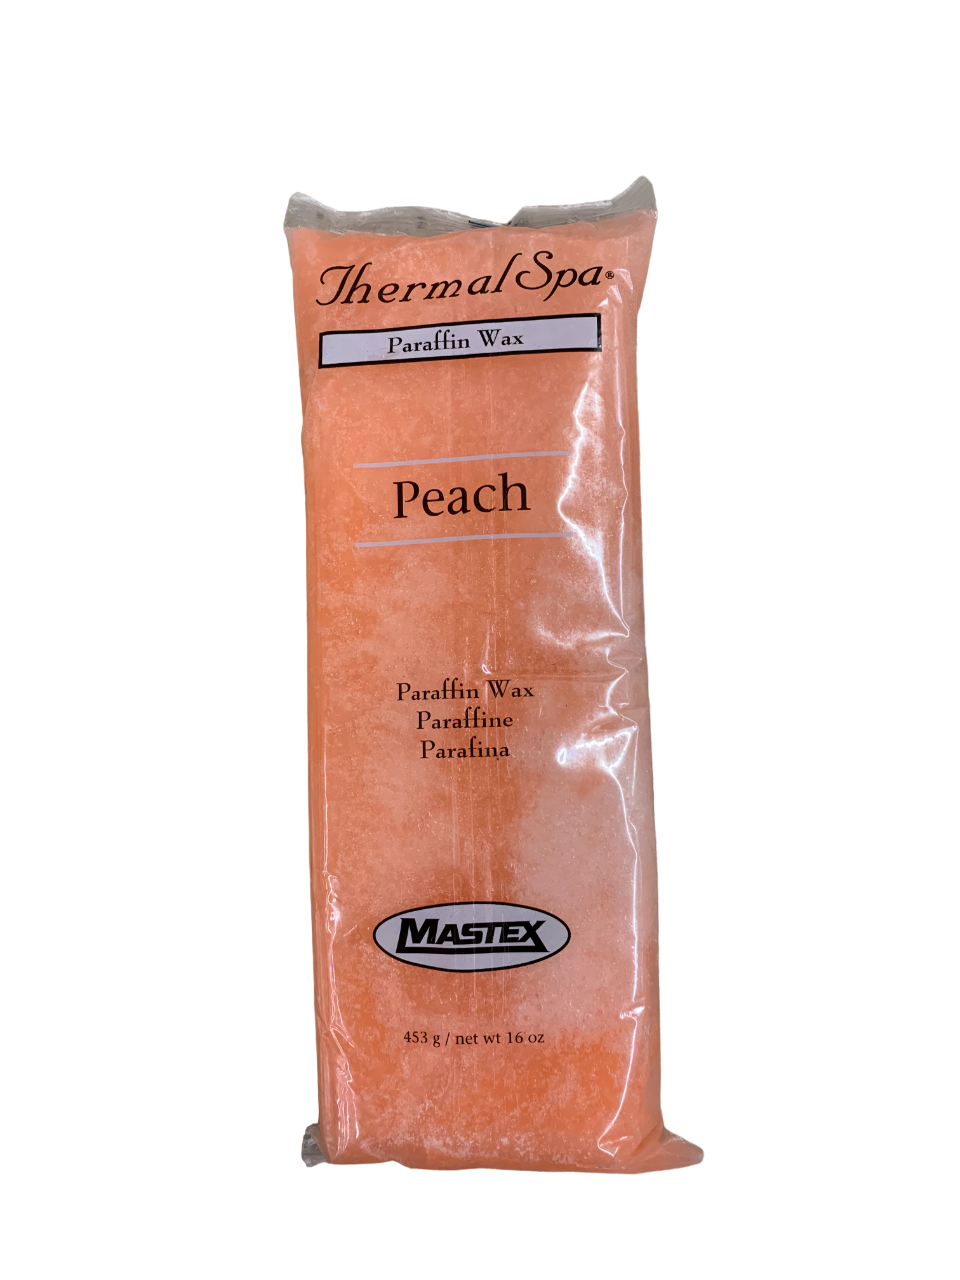 Thermal Spa Paraffin Wax Peach